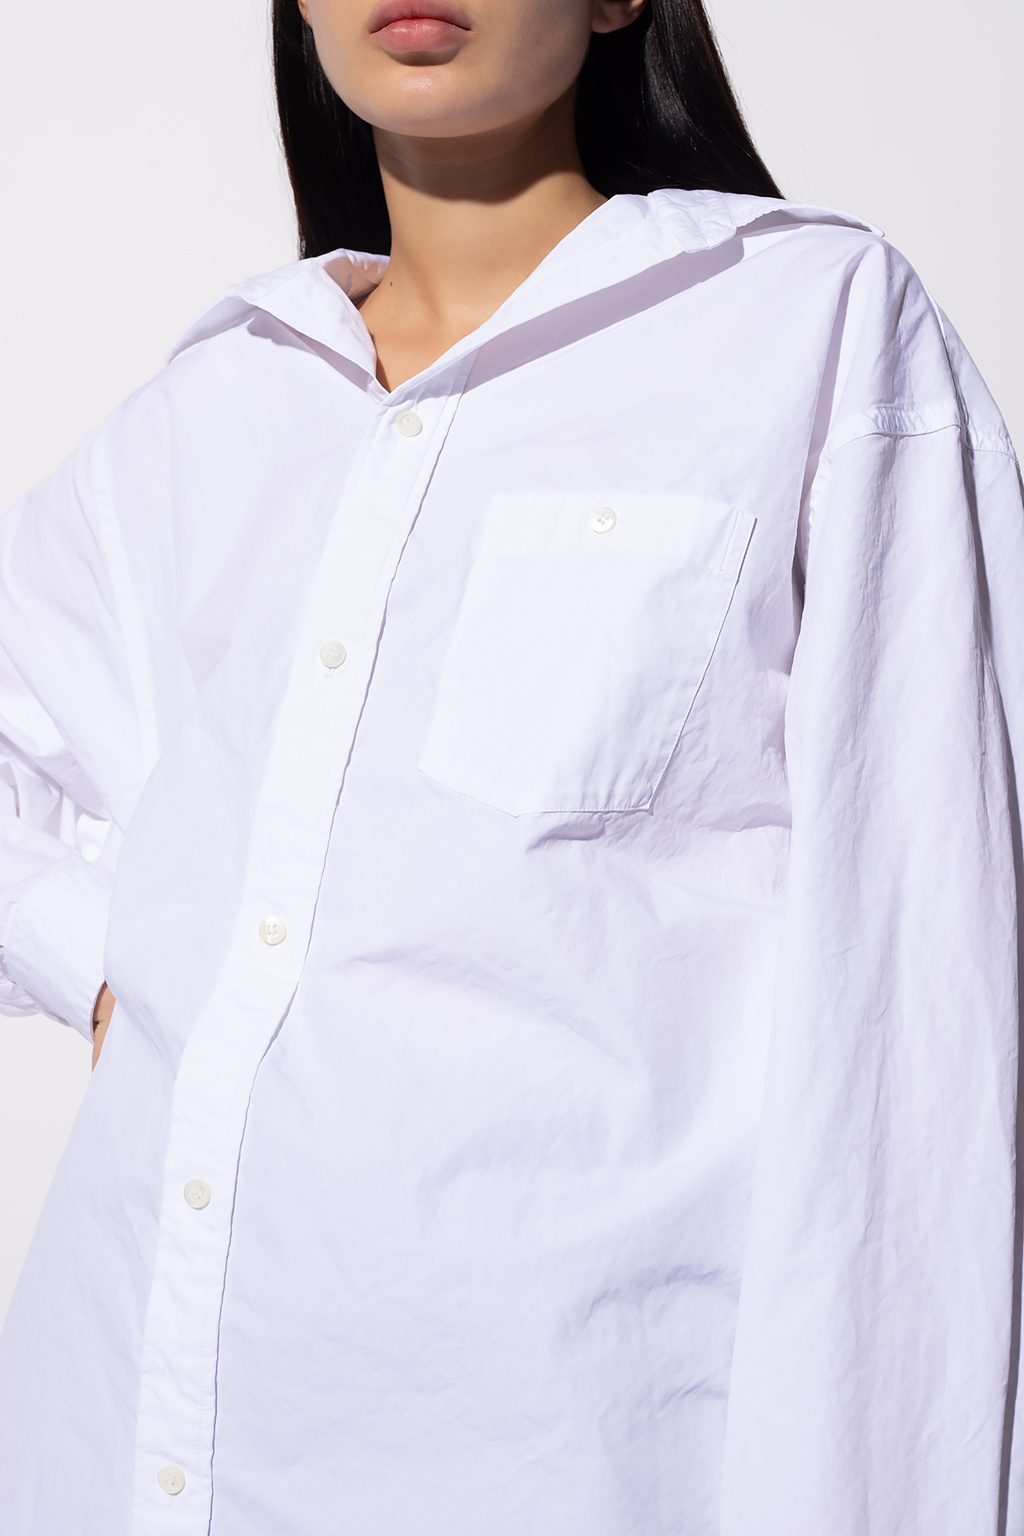 Balenciaga shirt SIMONS with pocket